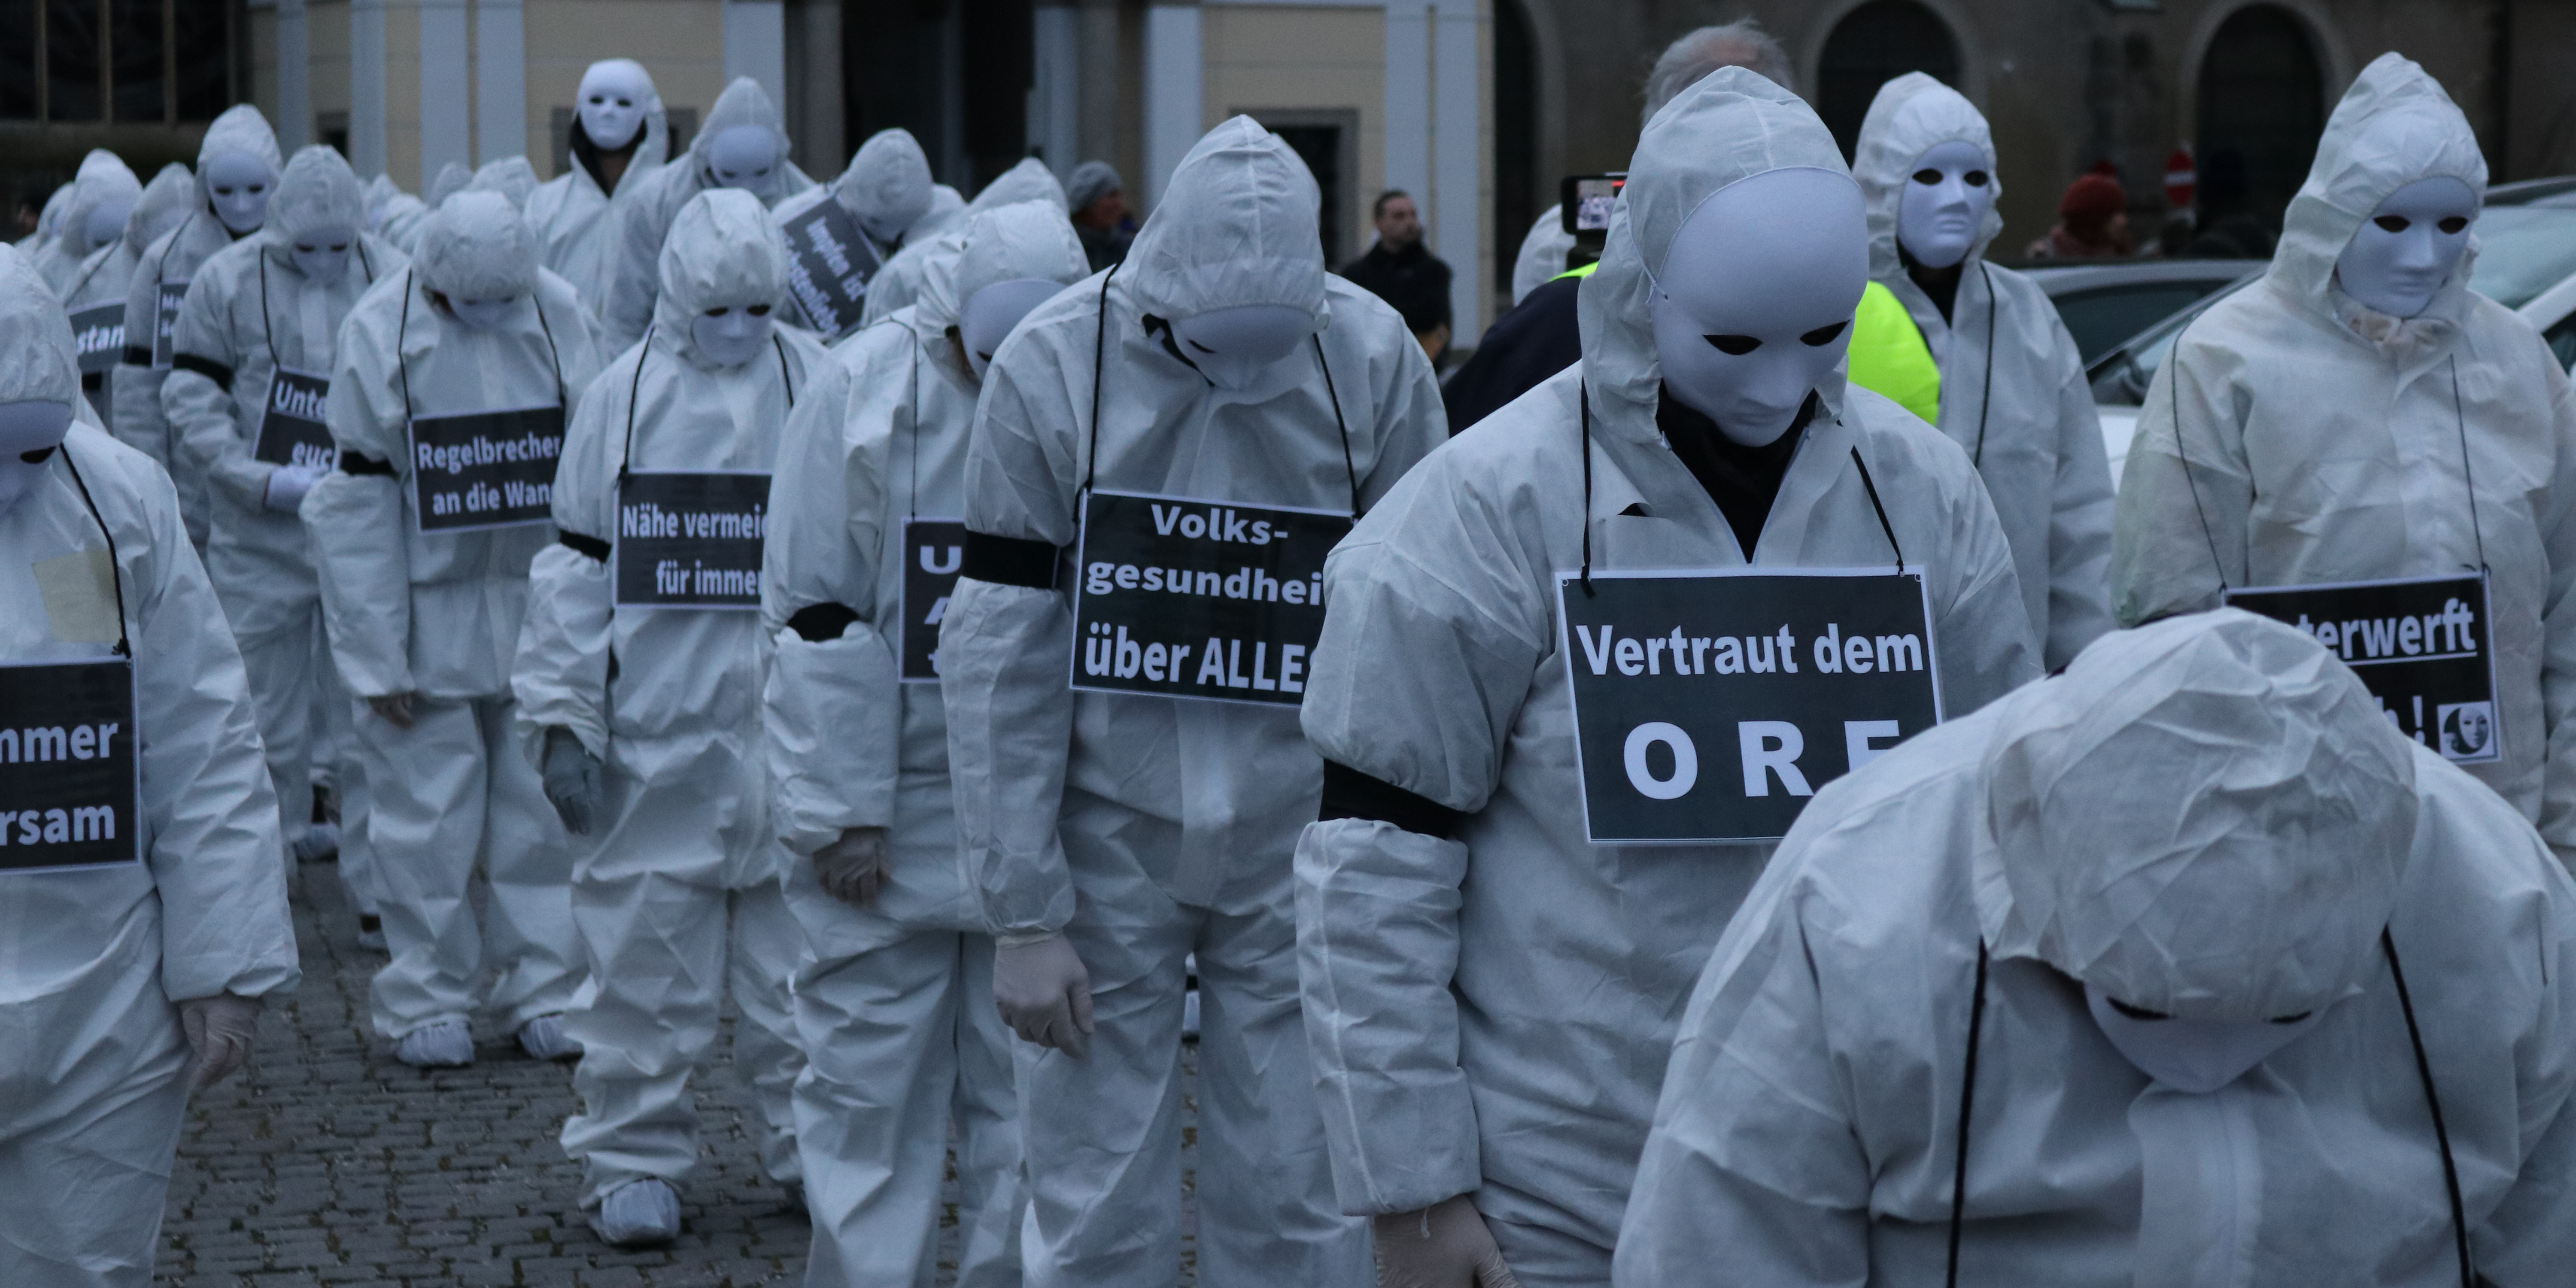 Grusel-Demos von Corona-Gegnern in Oberösterreich | Schock in Linz, Steyr, Freistadt, Wels